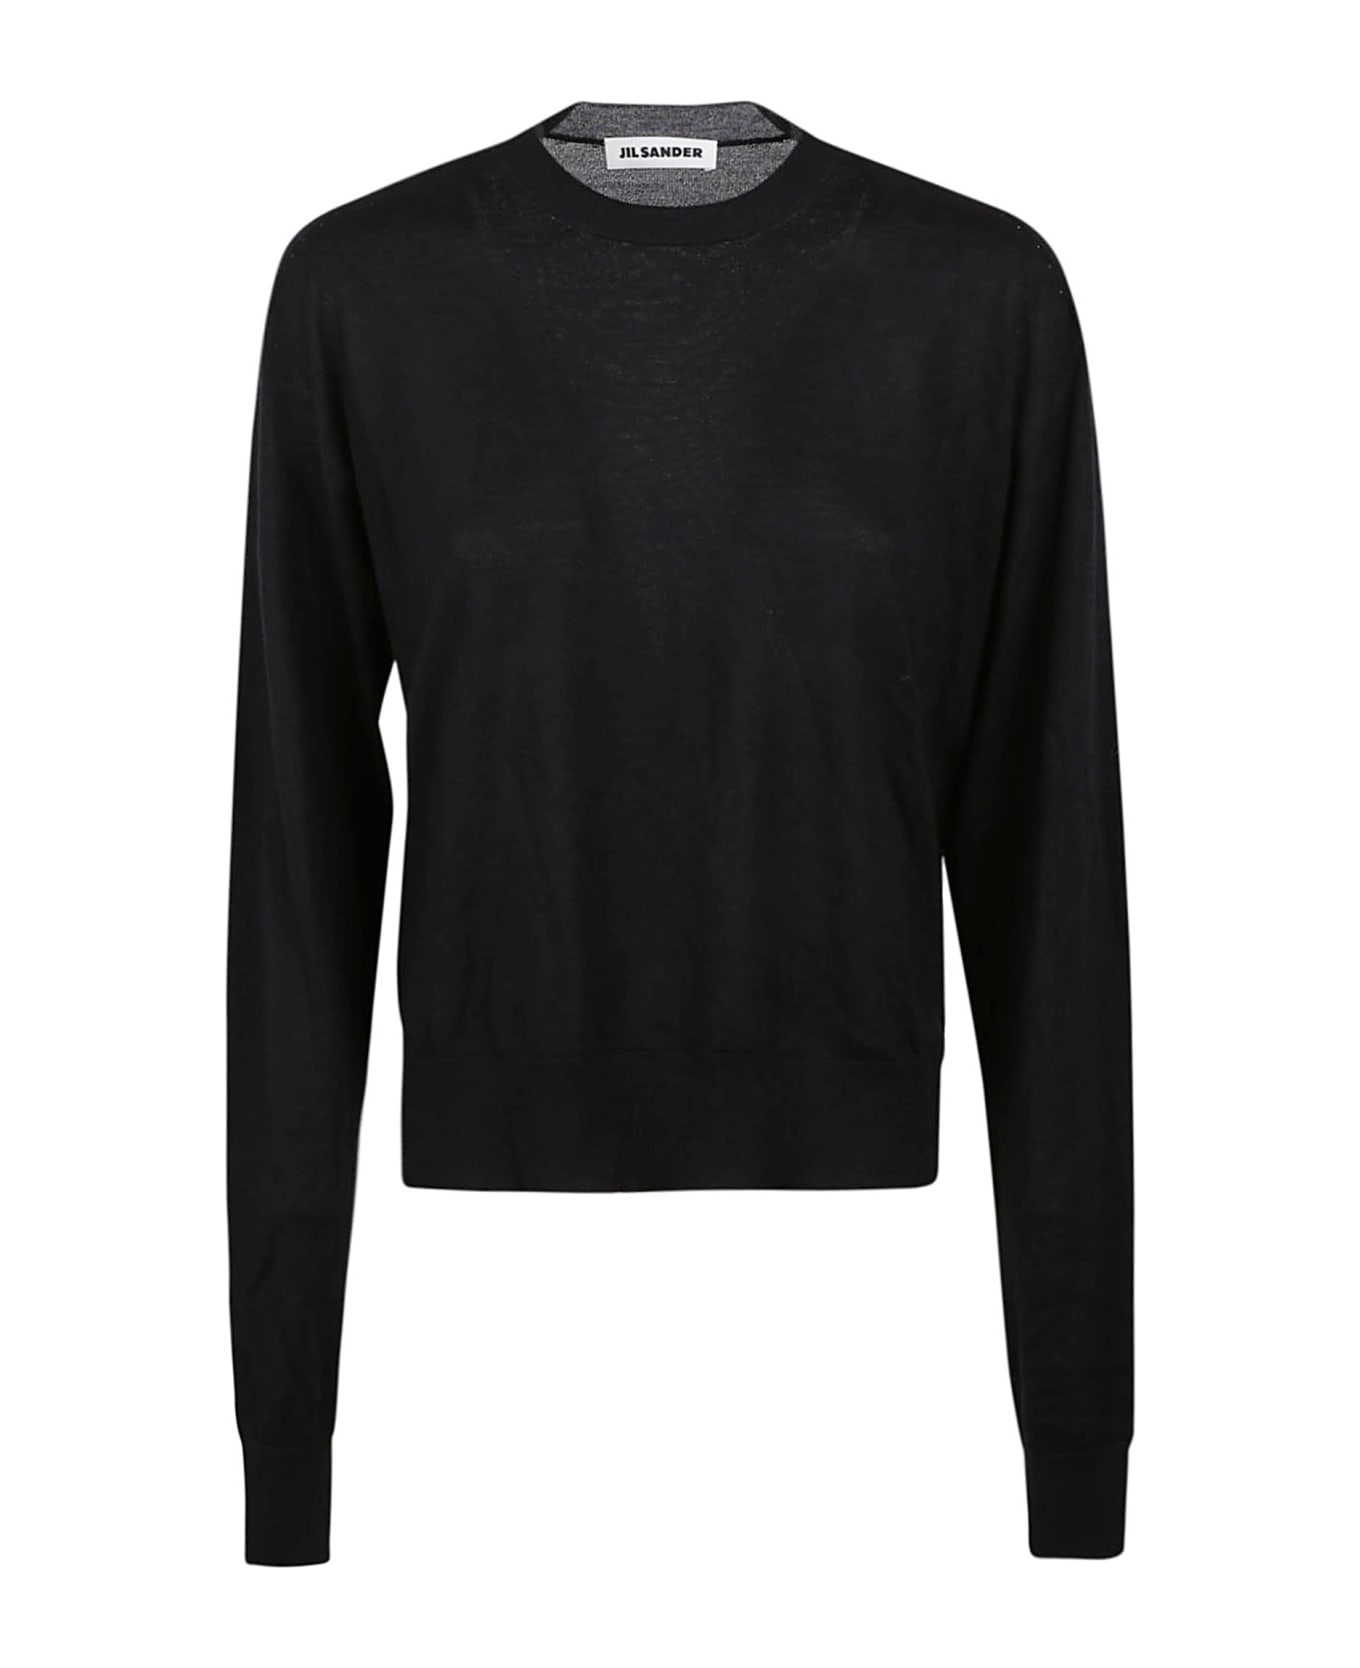 Jil Sander Sweater Cn Ls - Black ニットウェア